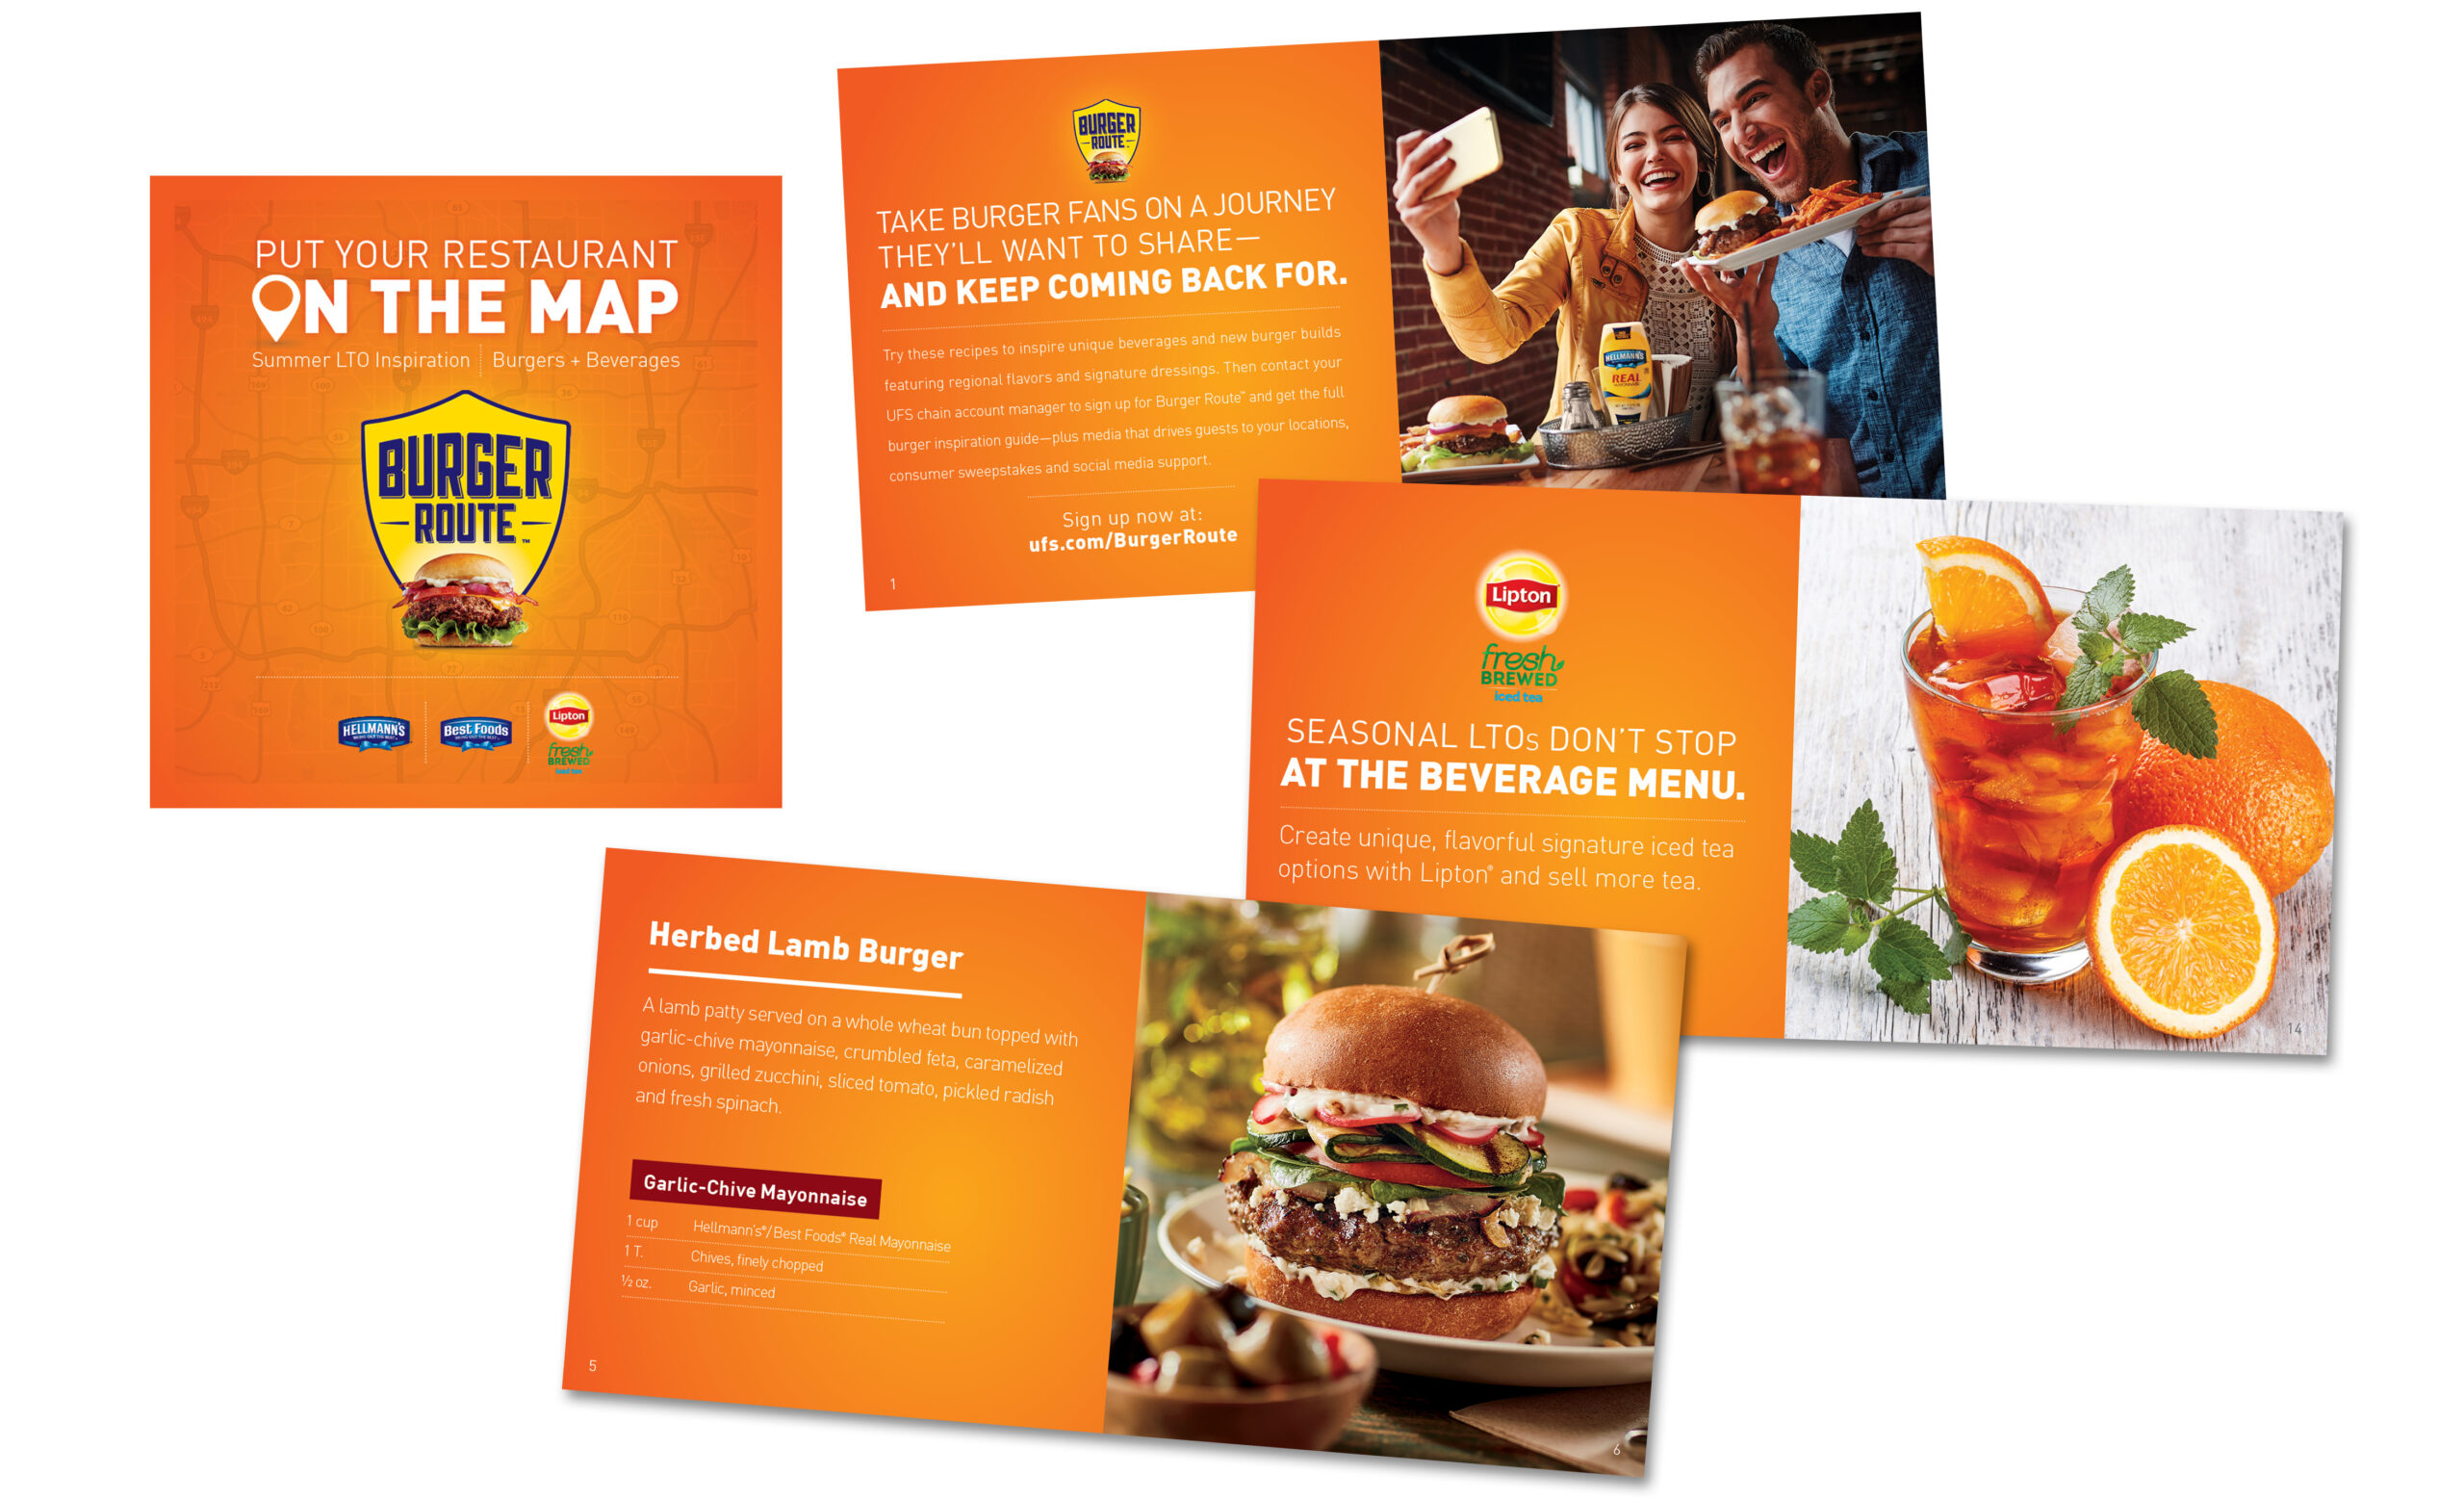 Lipton Burger Route Recipe book